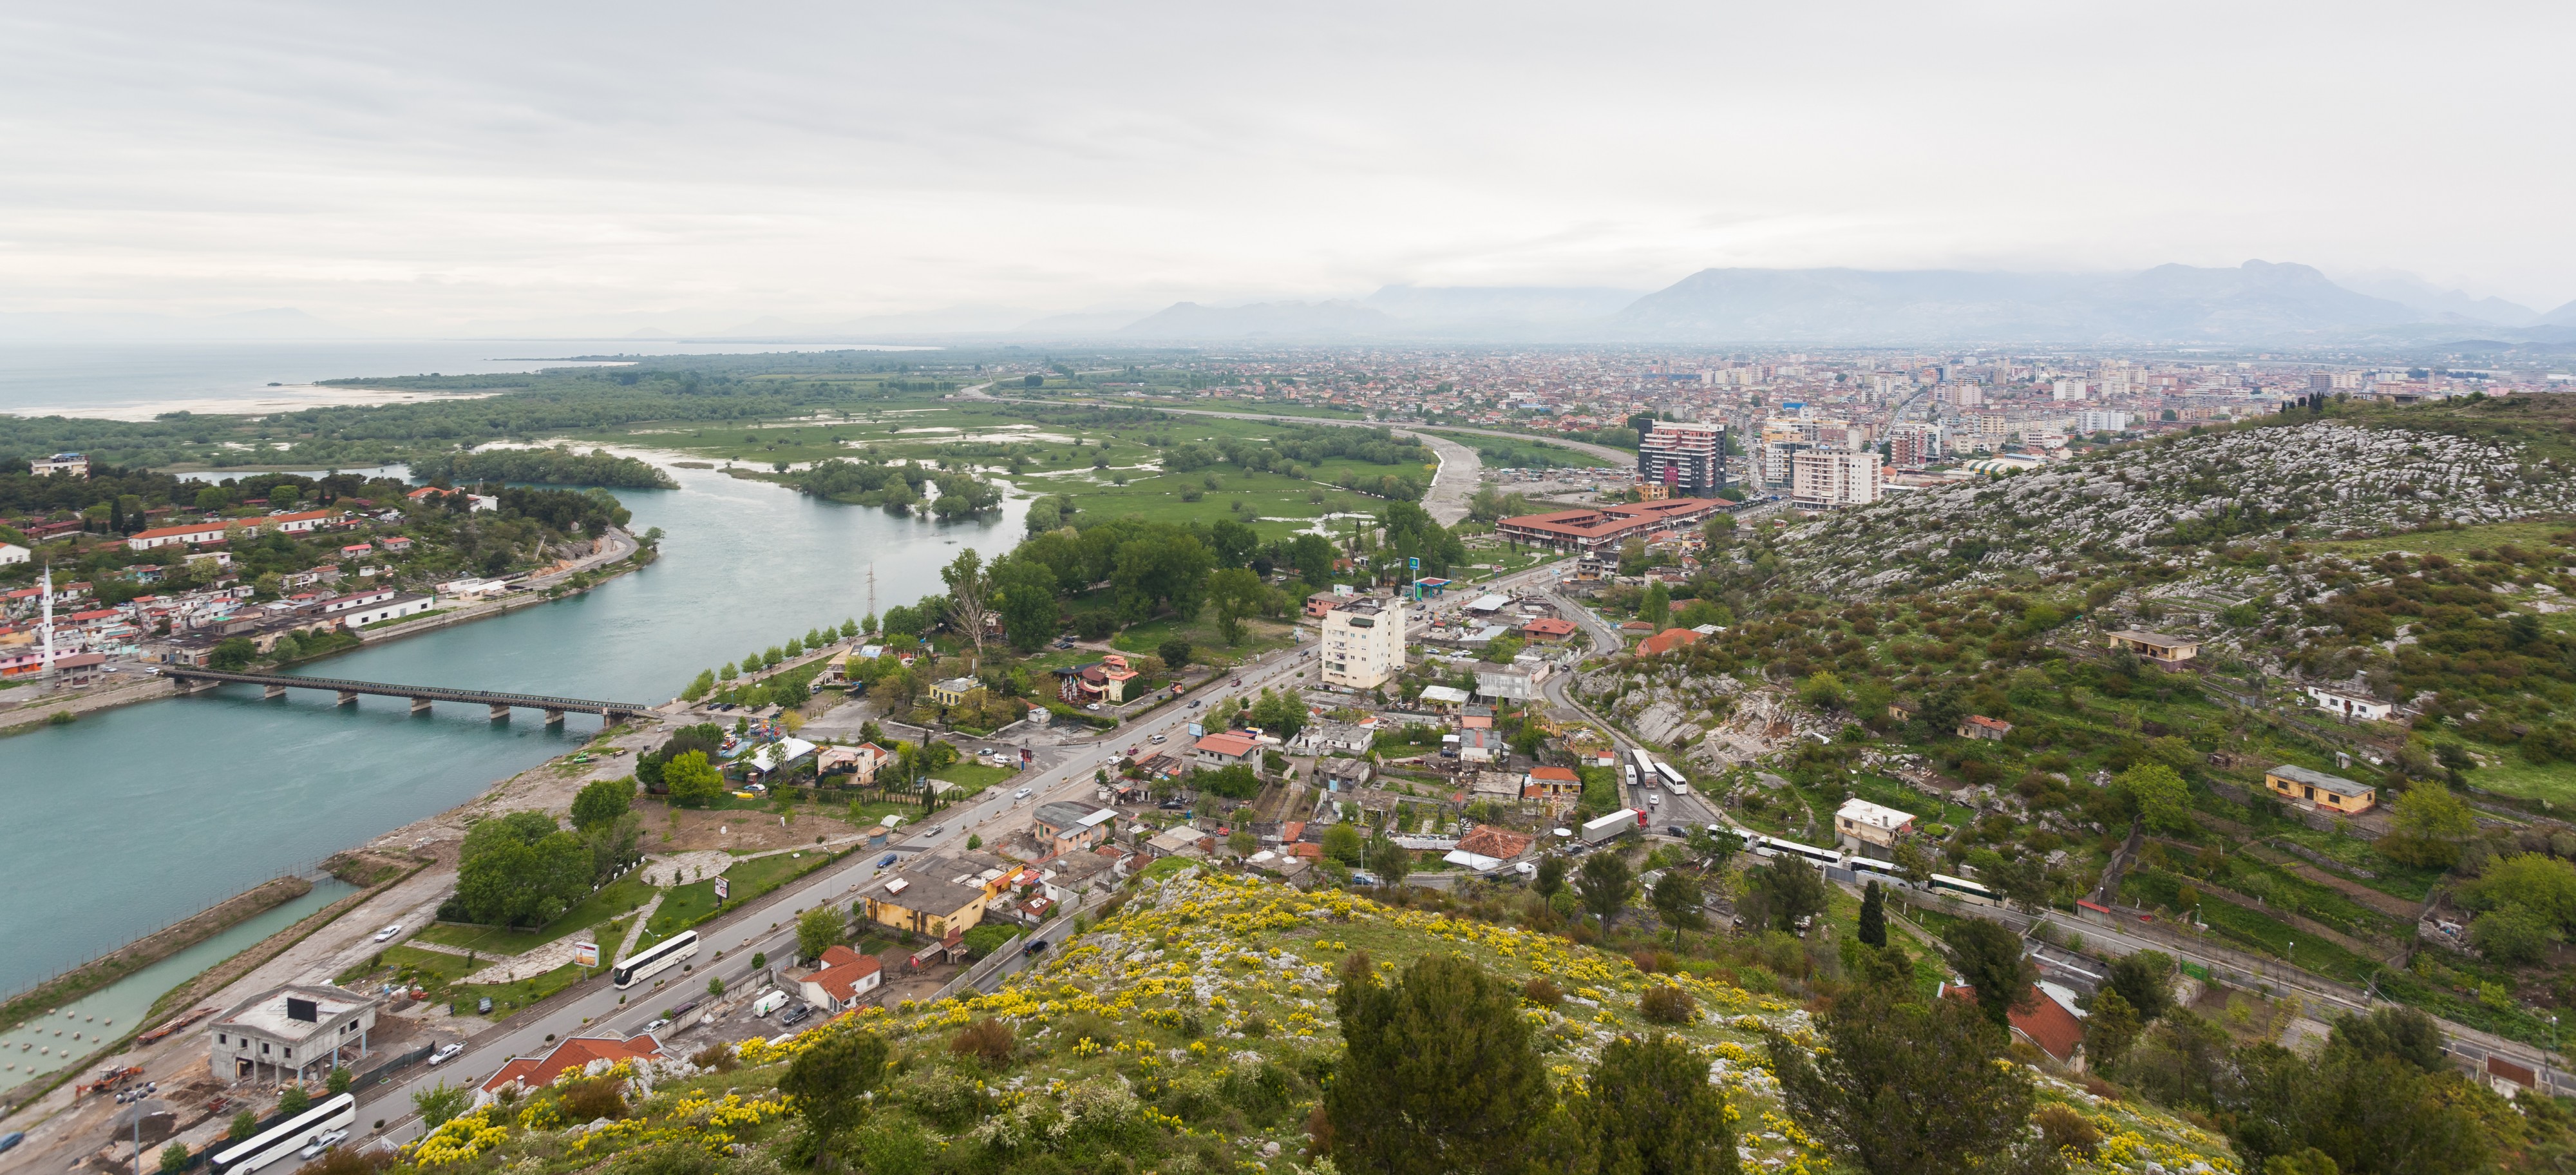 Vista de Shkodra, Albania, 2014-04-18, DD 12